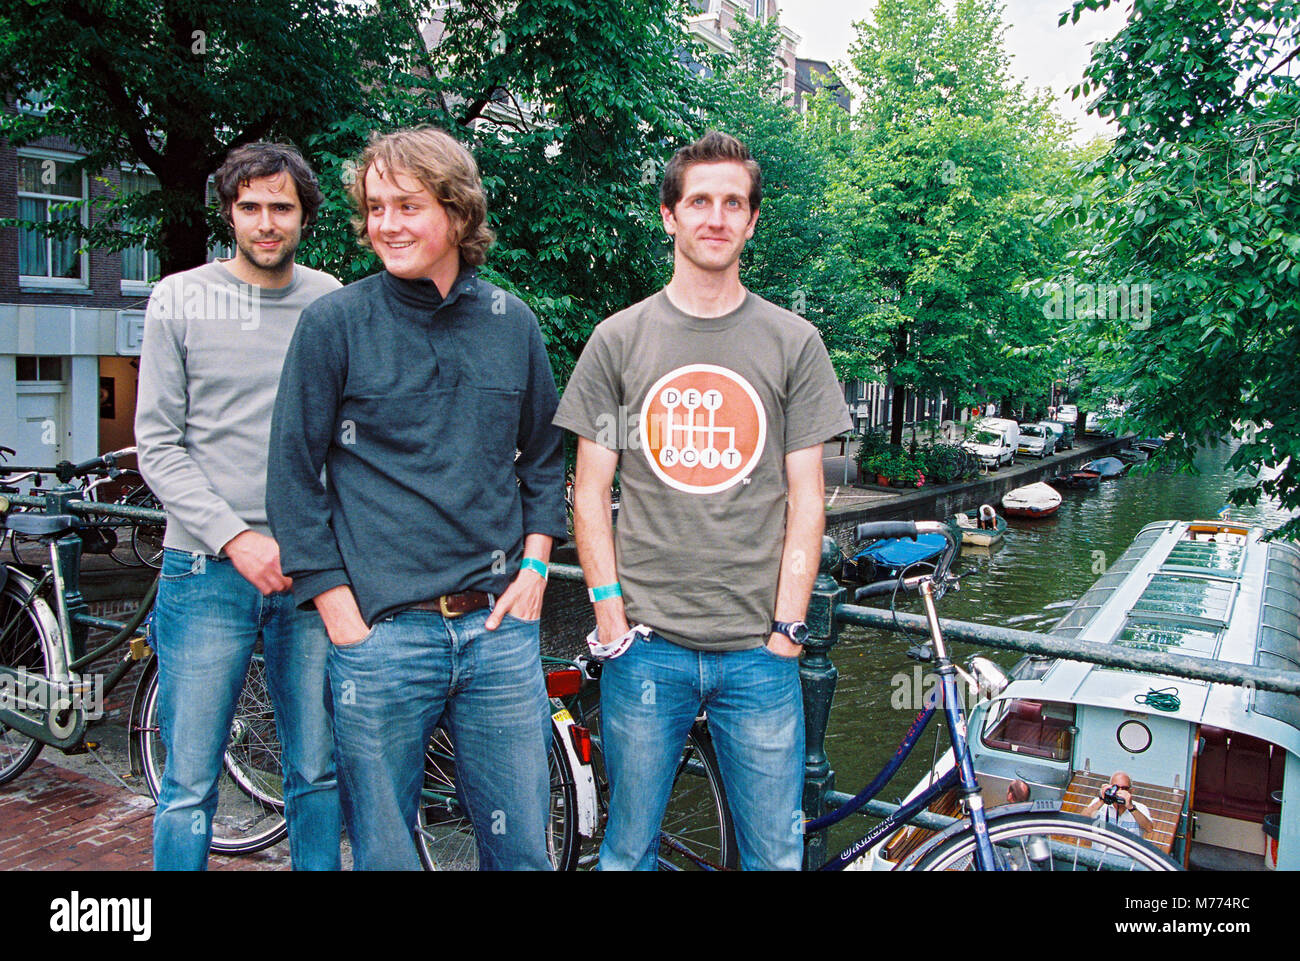 Groupe anglais Keane photographié à Amsterdam le 7 juillet 2004, Pays-Bas, Europe Banque D'Images